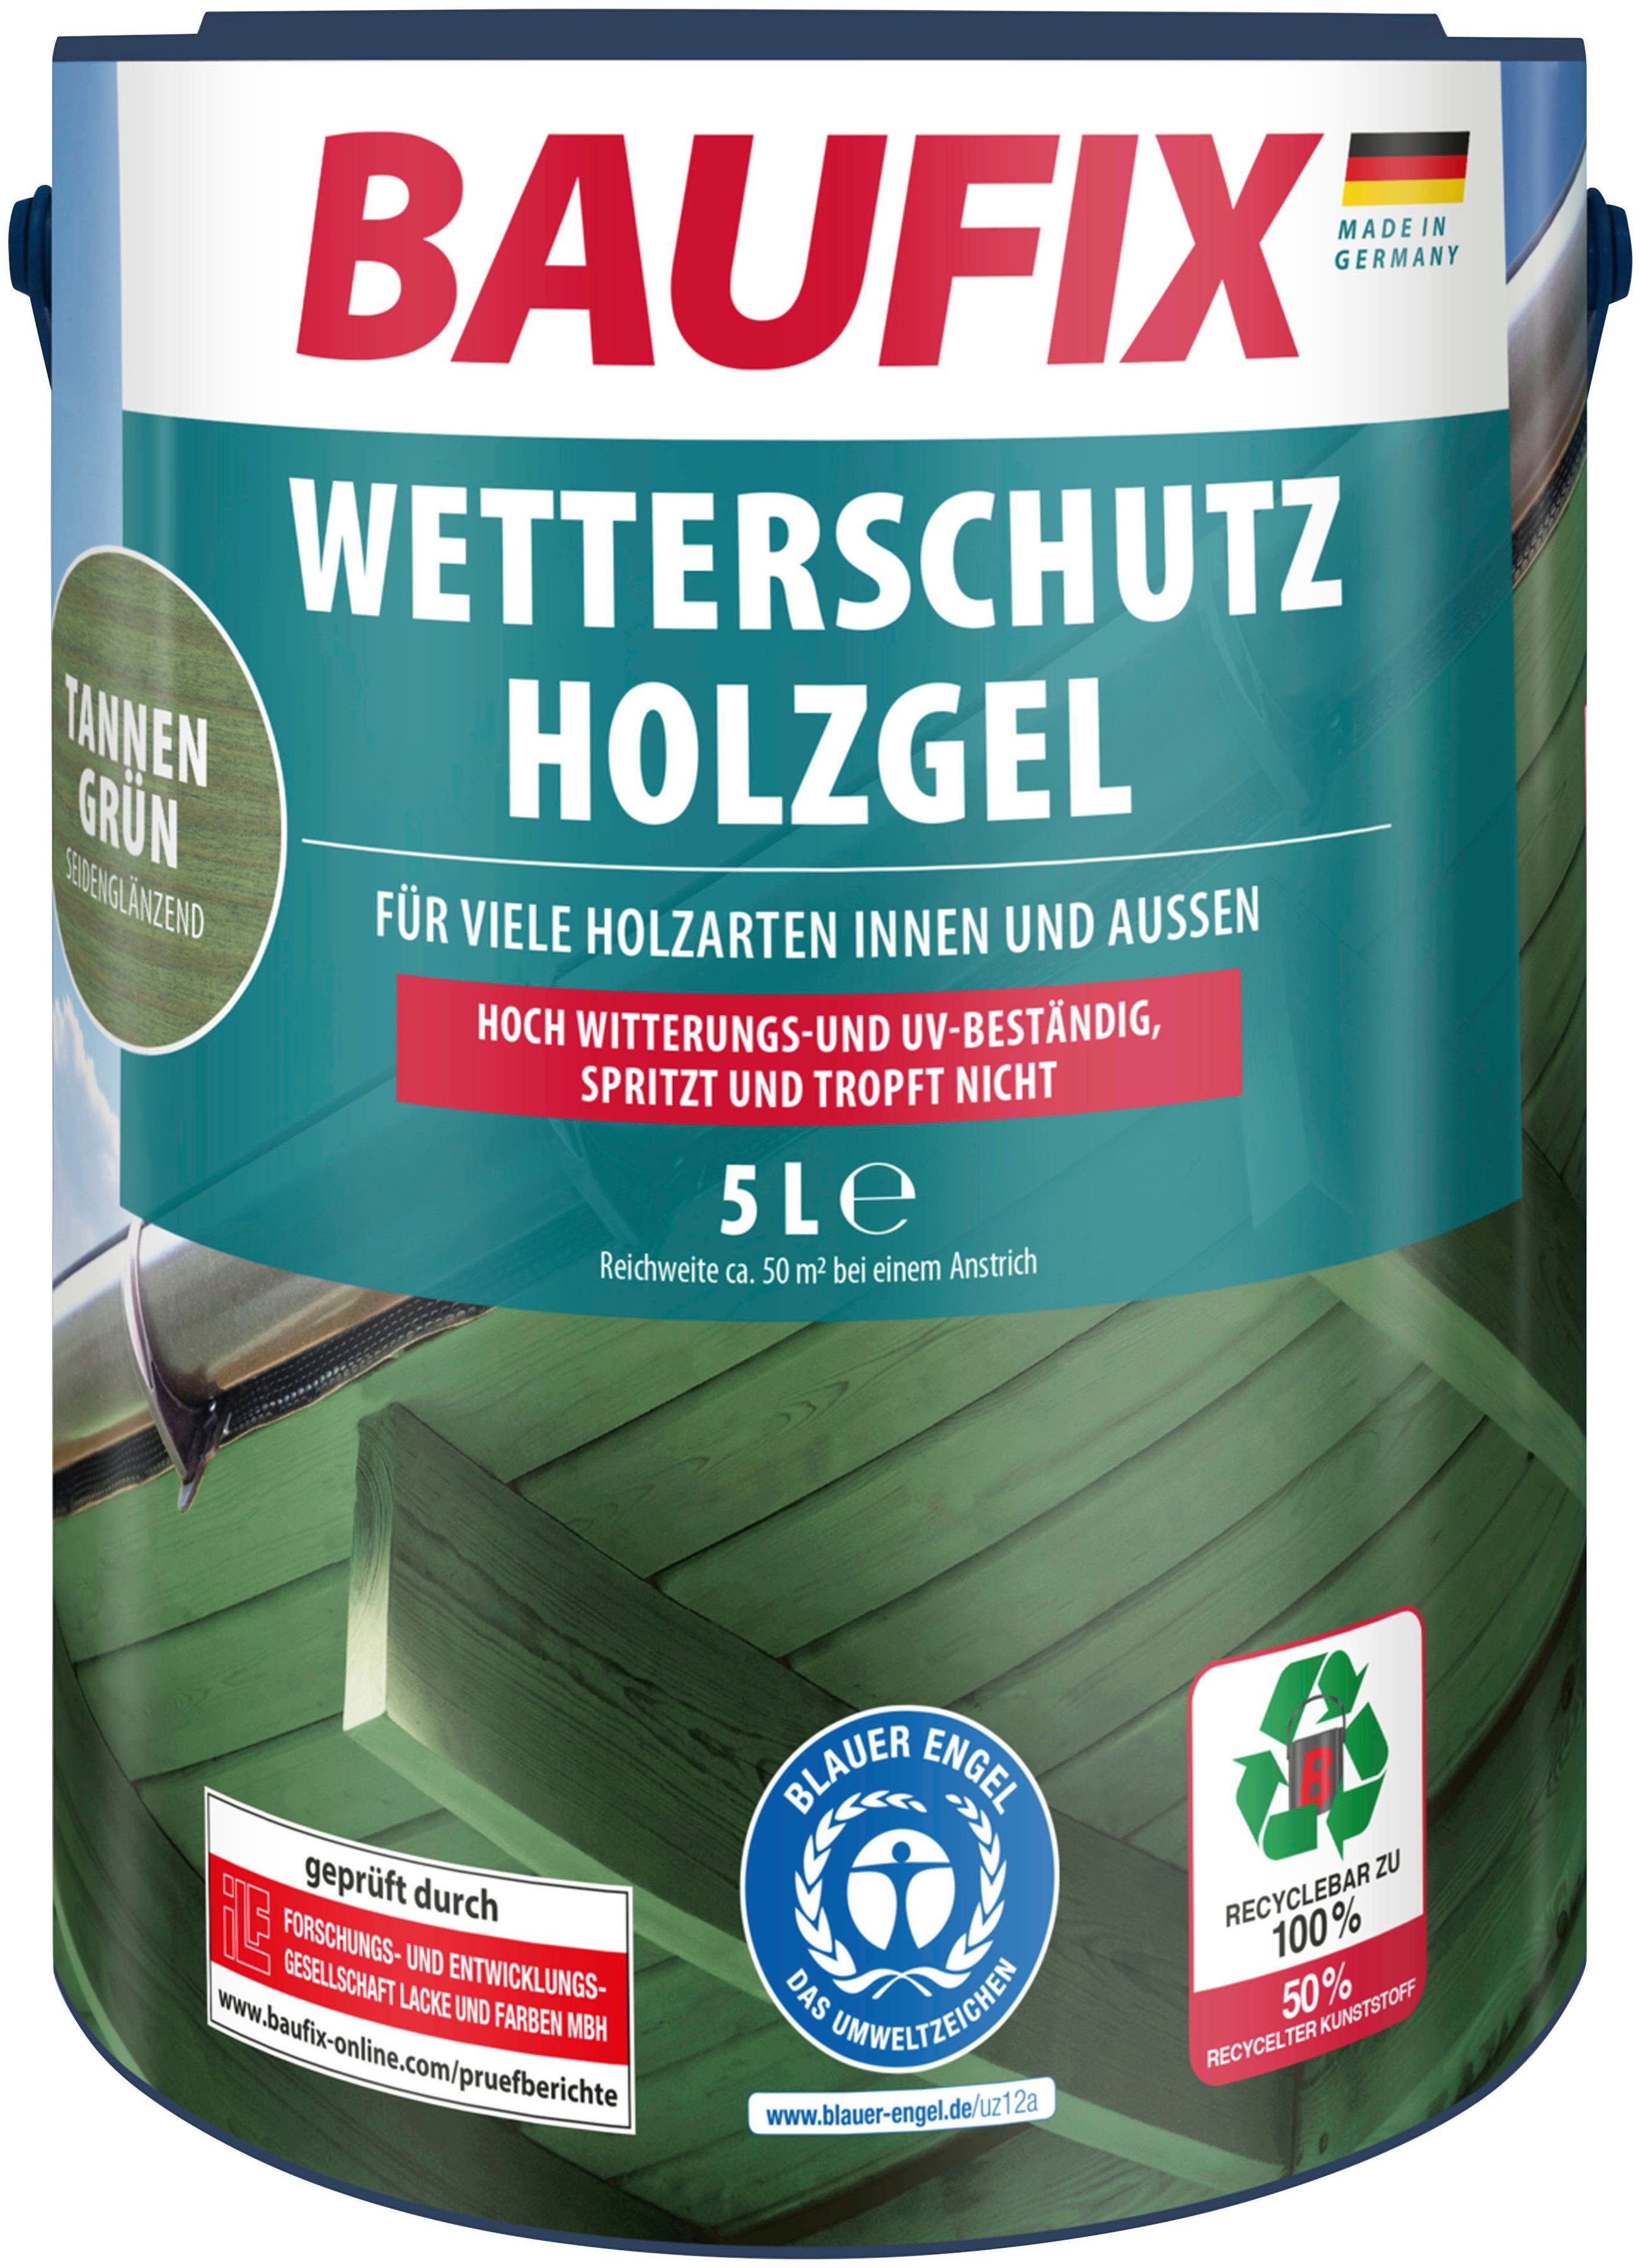 Baufix Holzschutzlasur Wetterschutz-Holzgel, wetterbeständig, UV beständig, atmungsaktiv, 5L, seidenglänzend tannengrün